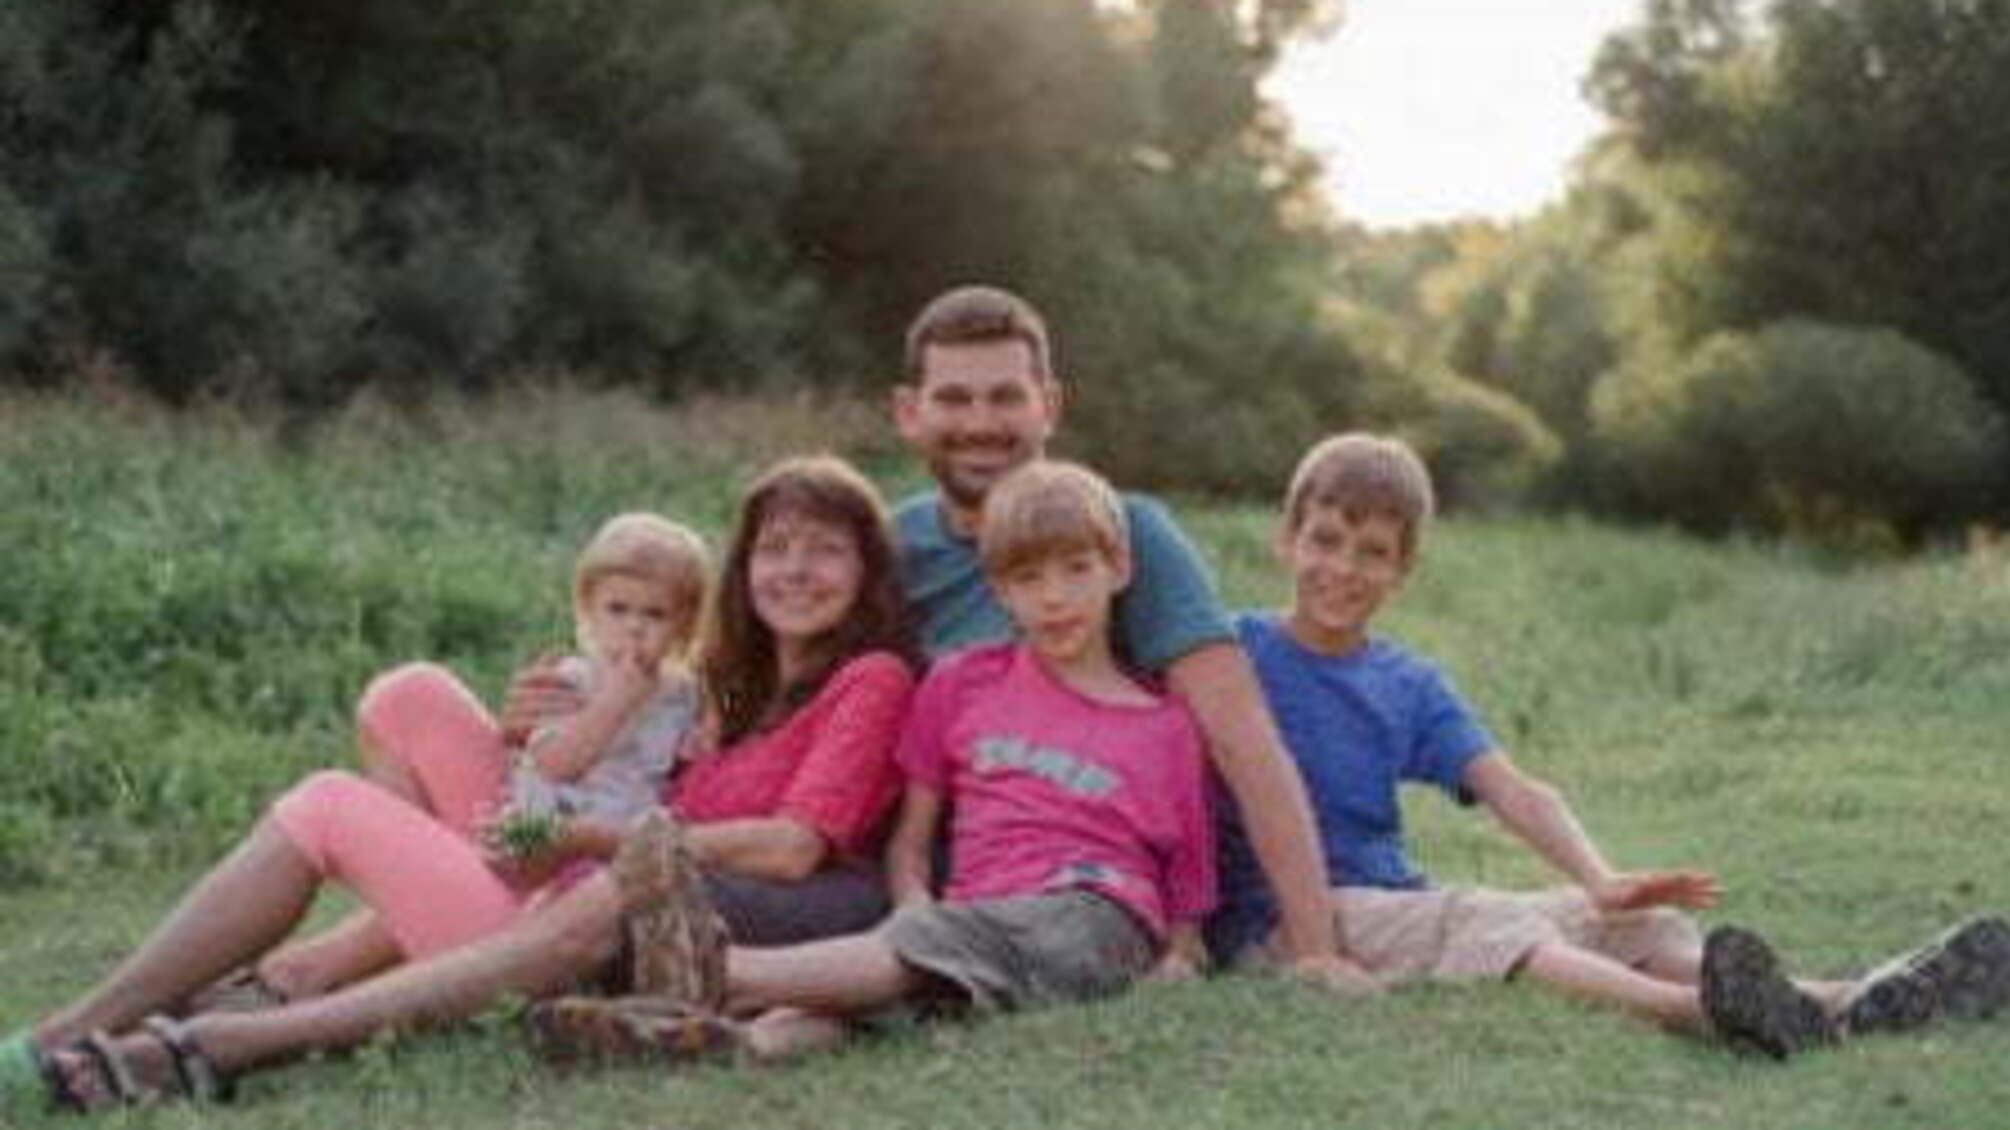 Щасливі та усміхнені: показали фото родини, яка загинула на Столичному шосе